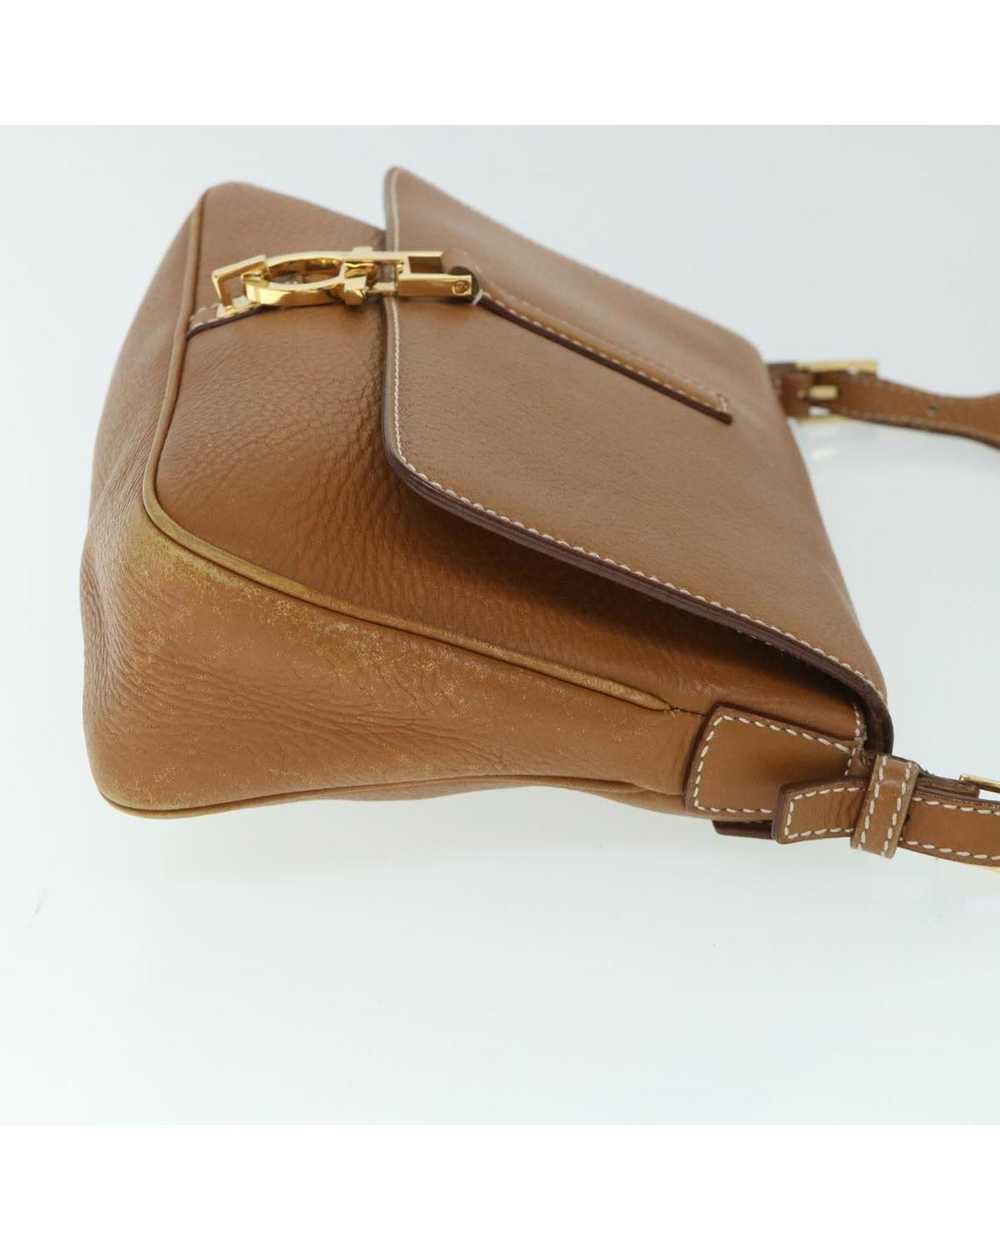 Salvatore Ferragamo Elegant Brown Leather Bag - image 4